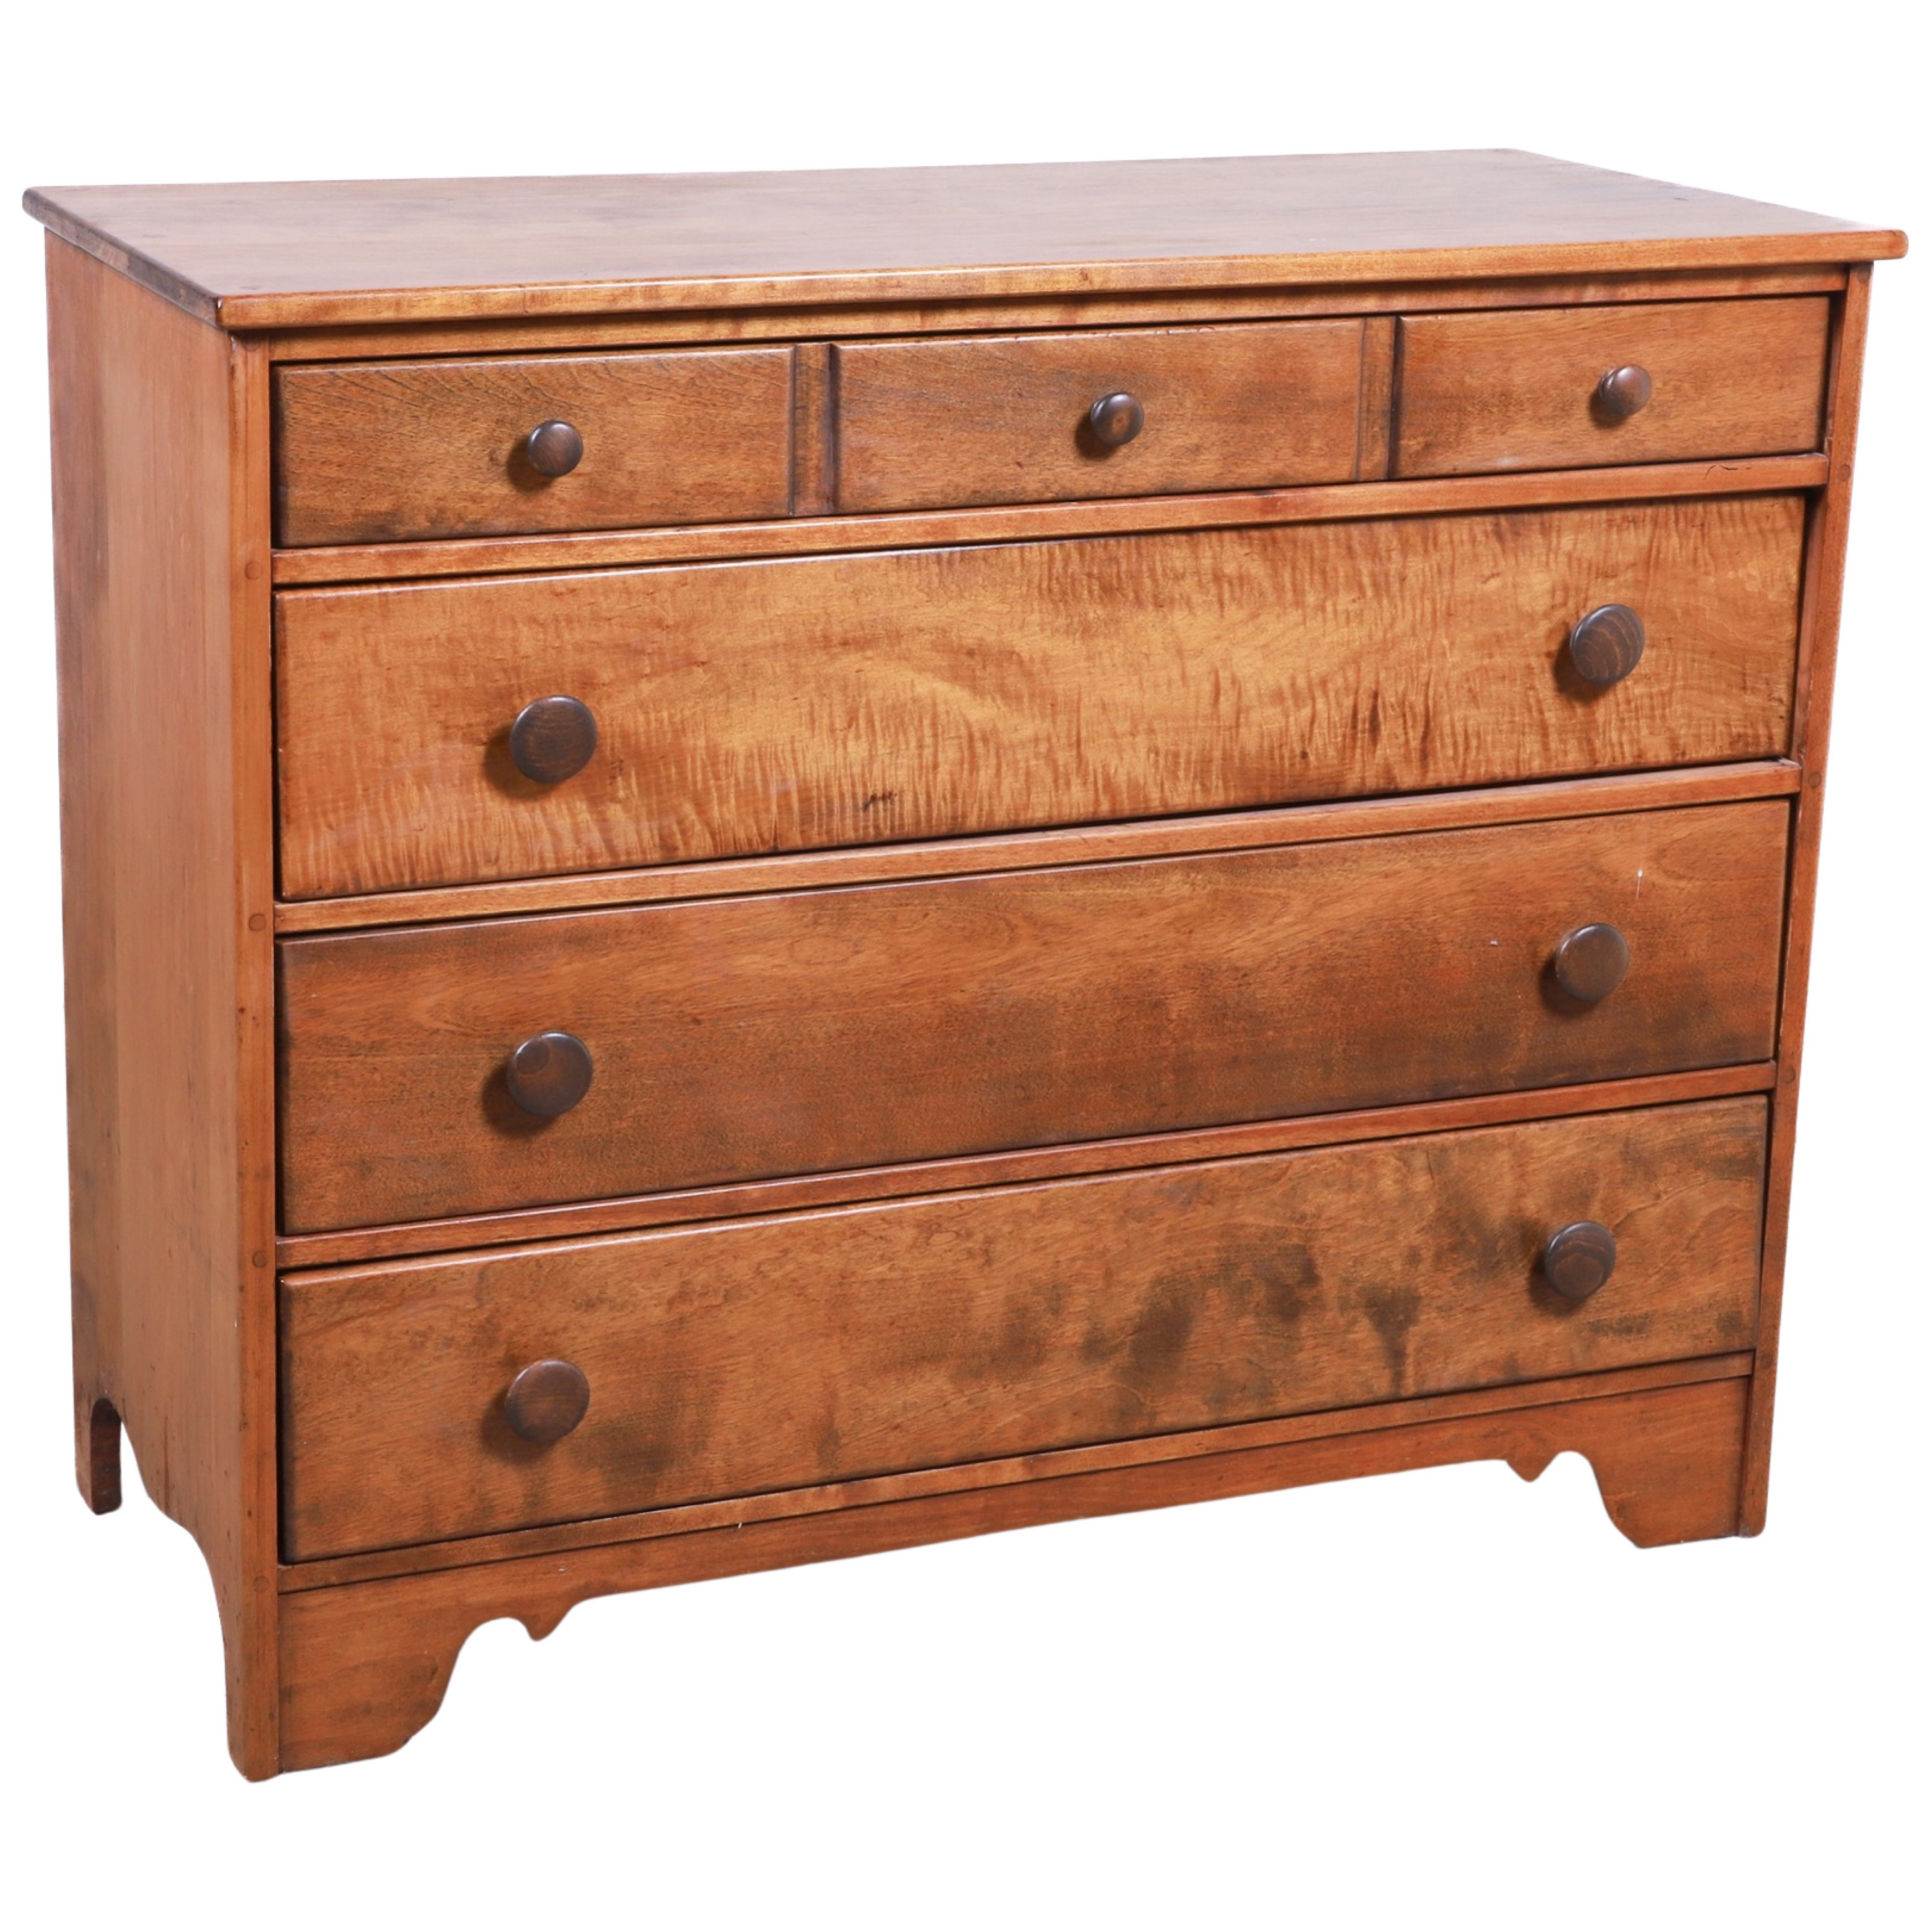 Maple 4-drawer chest, 35h x 41-1/2w